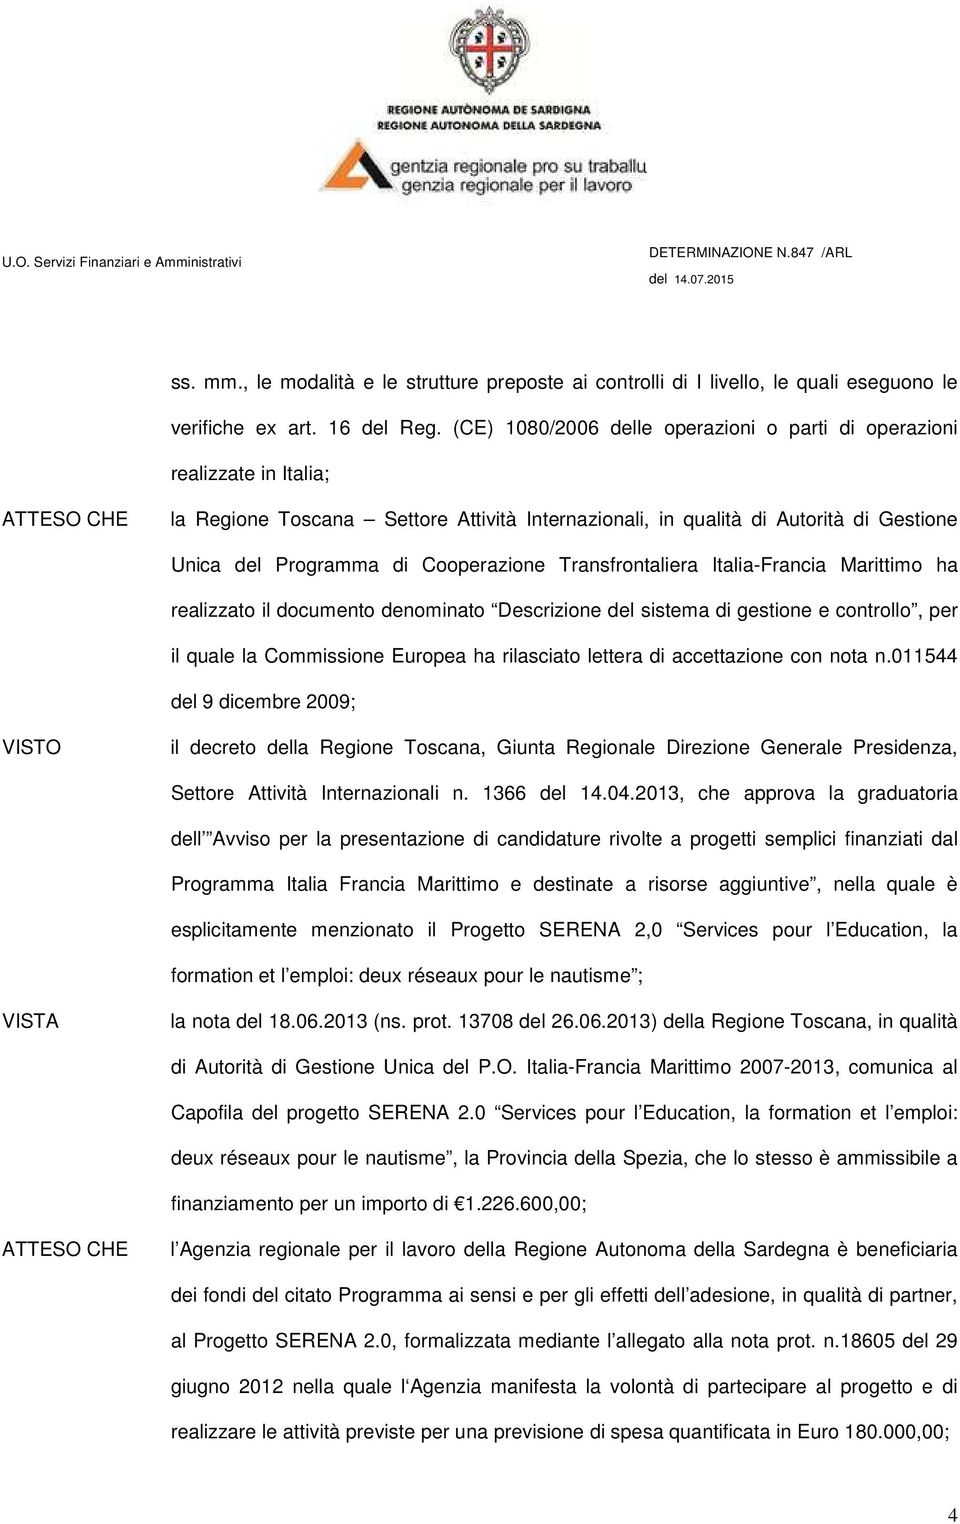 Transfrontaliera Italia-Francia Marittimo ha realizzato il documento denominato Descrizione del sistema di gestione e controllo, per il quale la Commissione Europea ha rilasciato lettera di